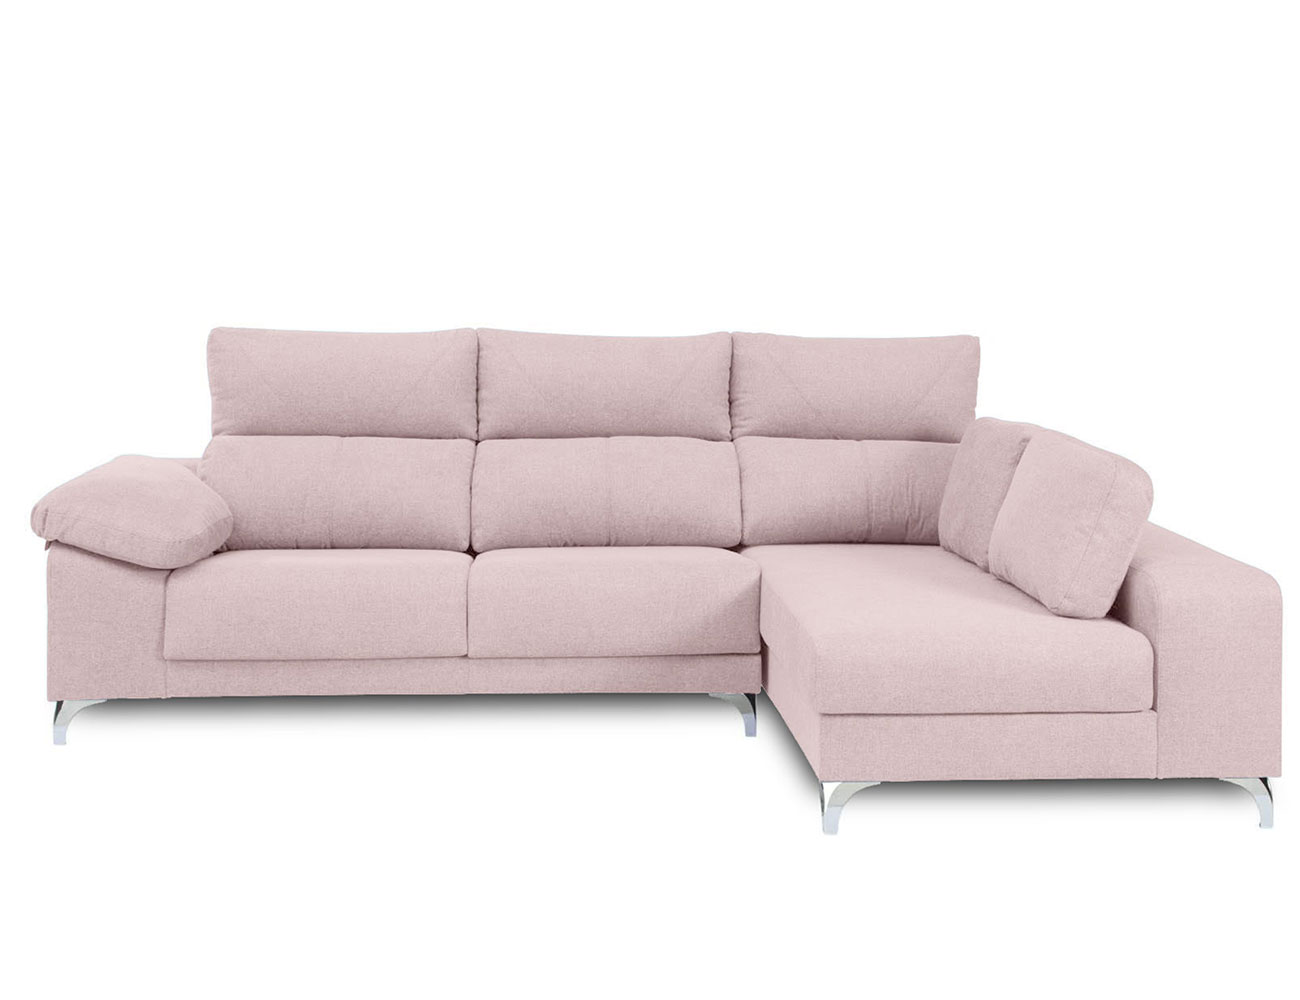 Sofa cuba web rosa